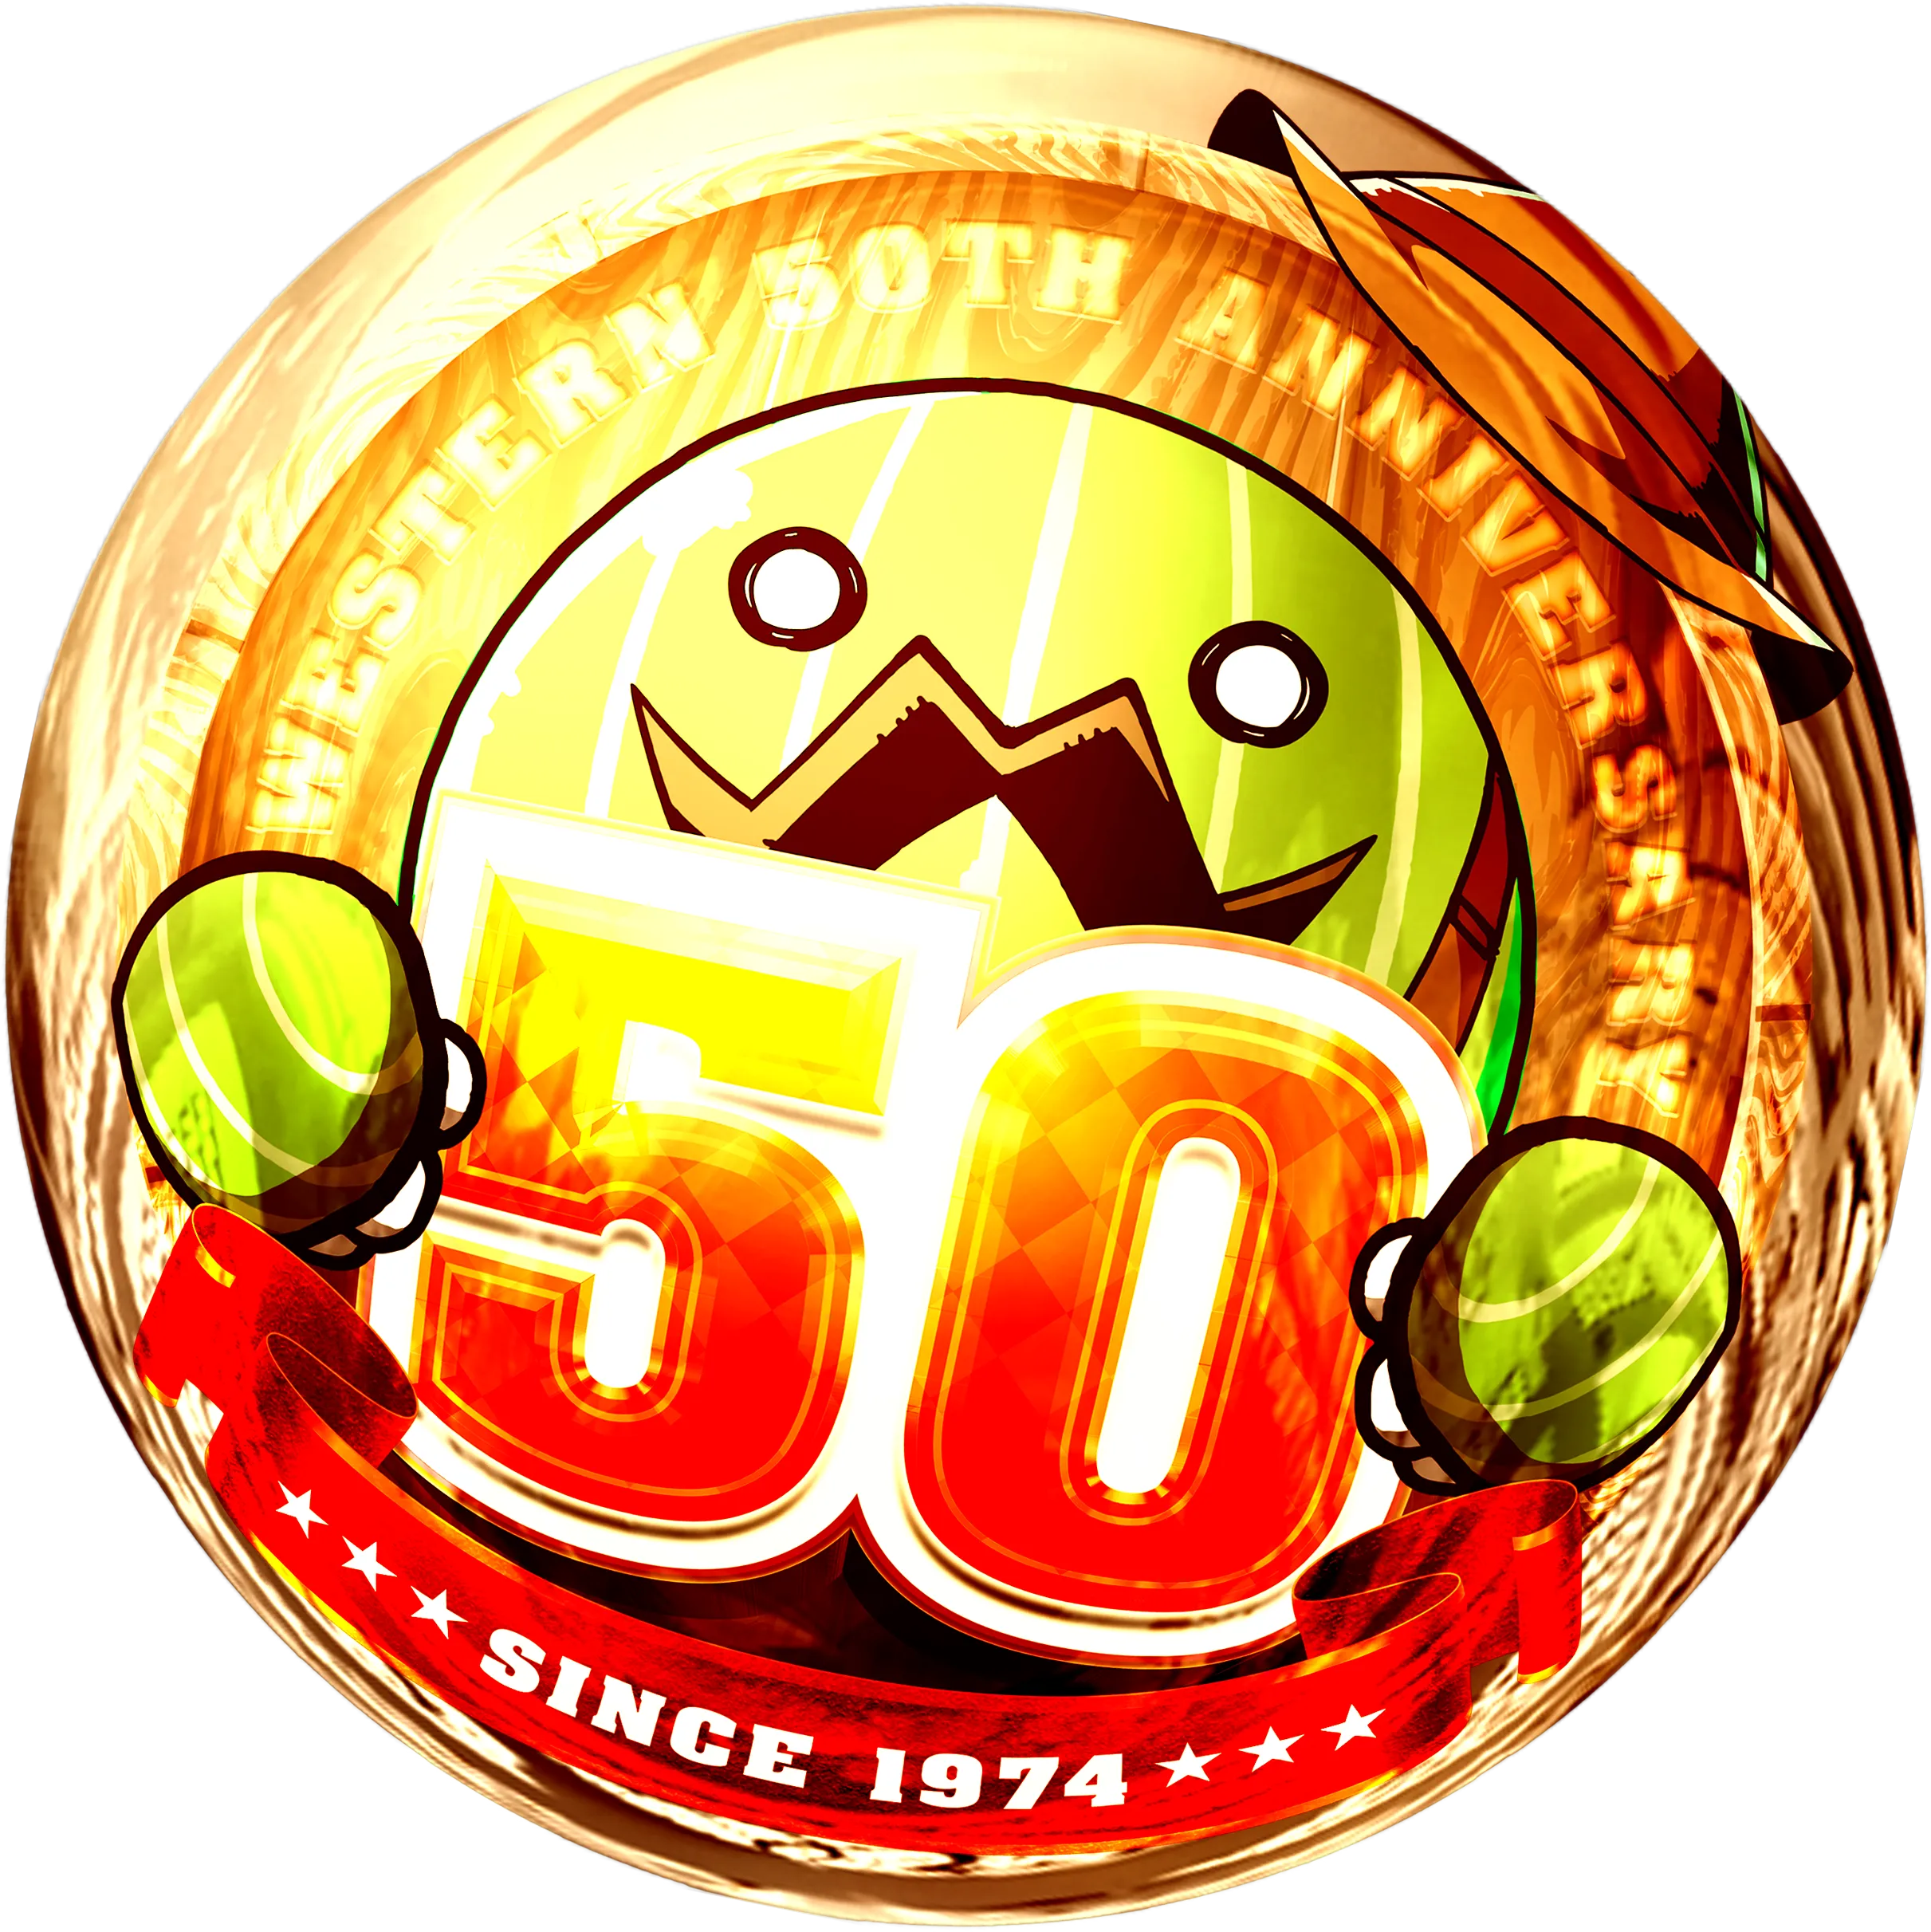 WESTERN50 since 1974